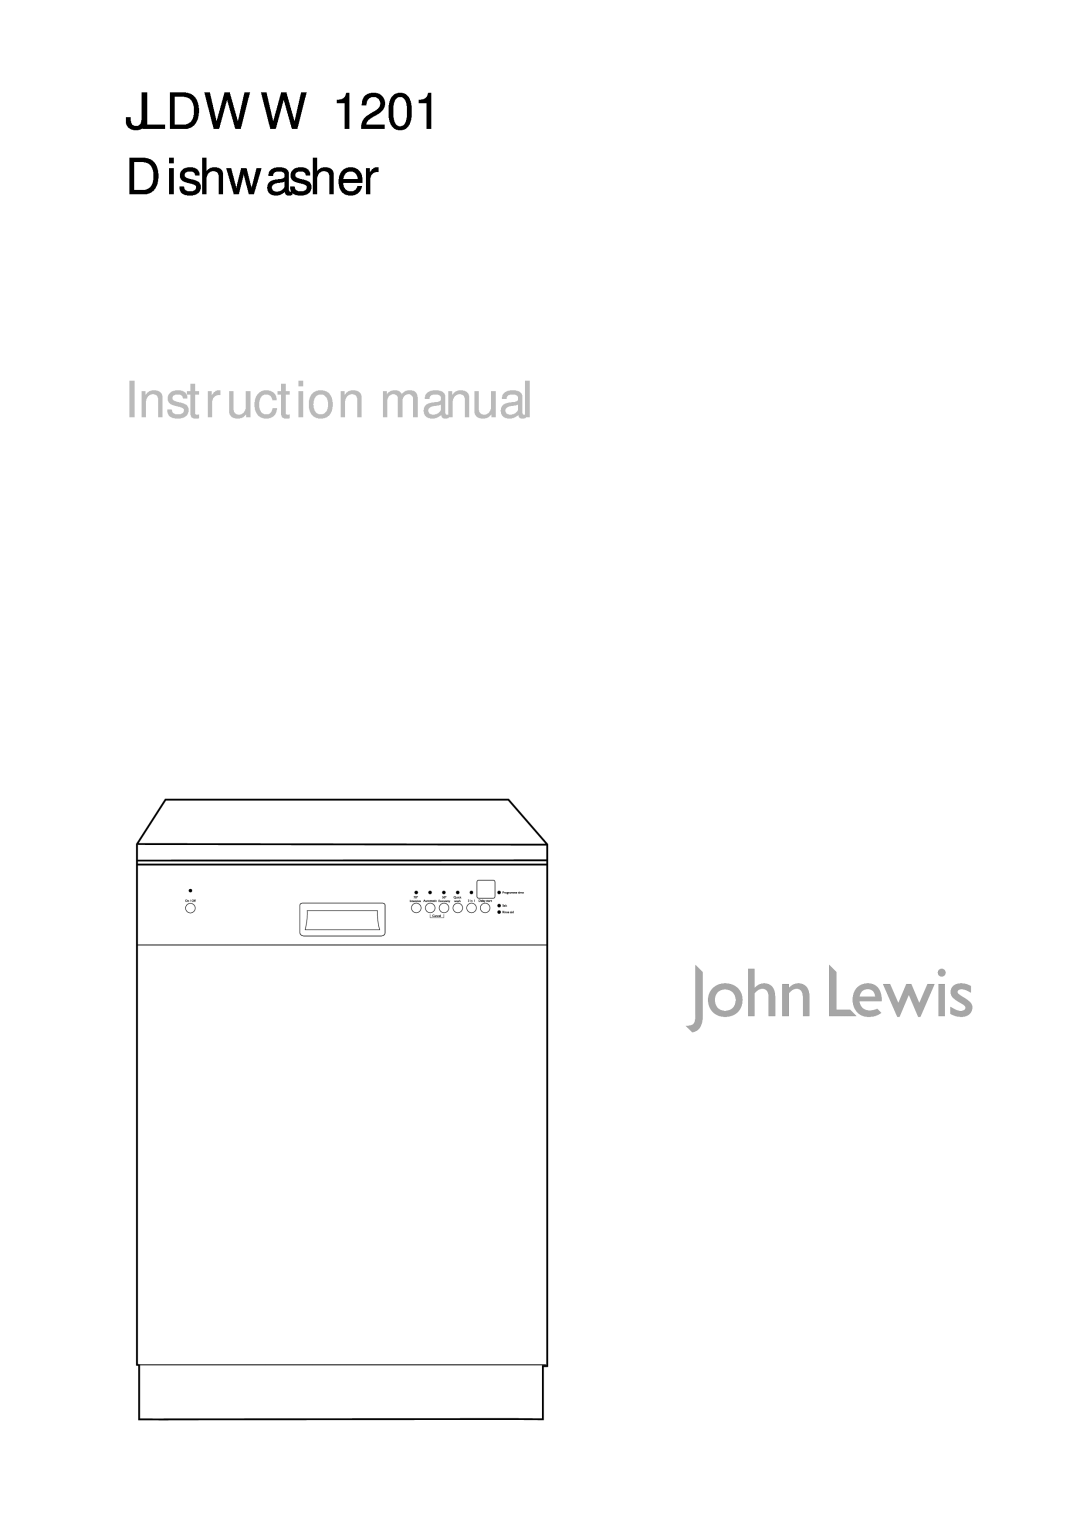 John Lewis instruction manual JLDWW 1201 Dishwasher 